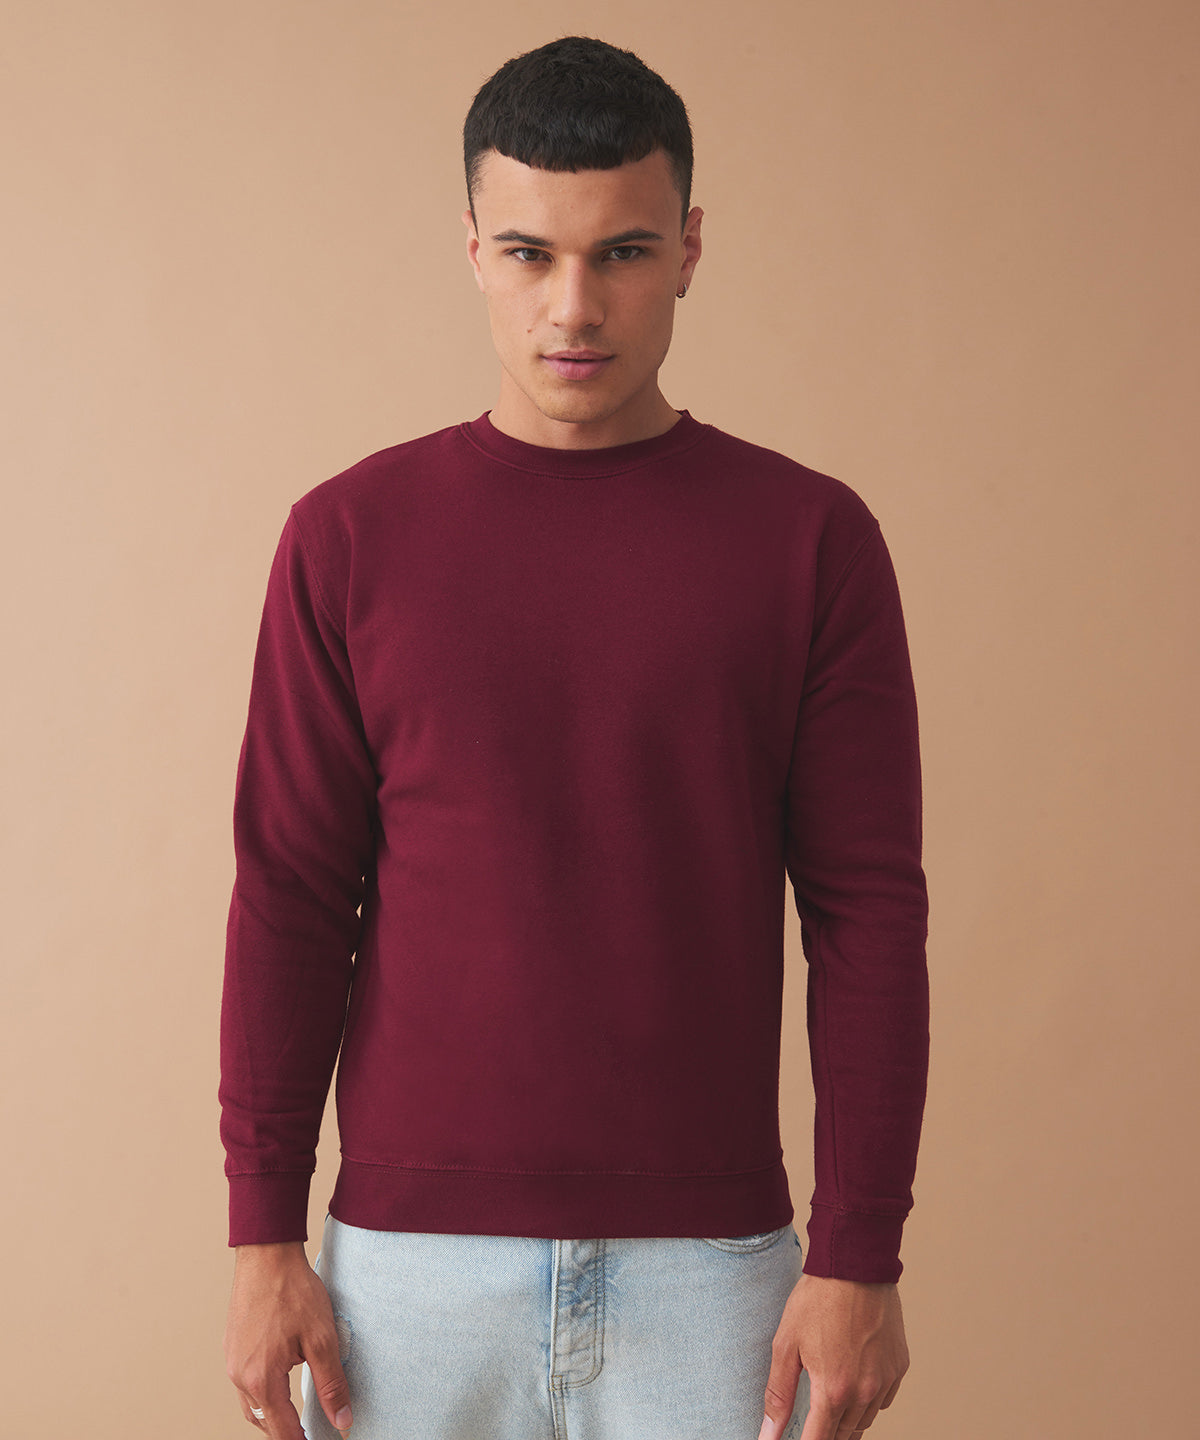 Háskólapeysur - Organic Sweatshirt